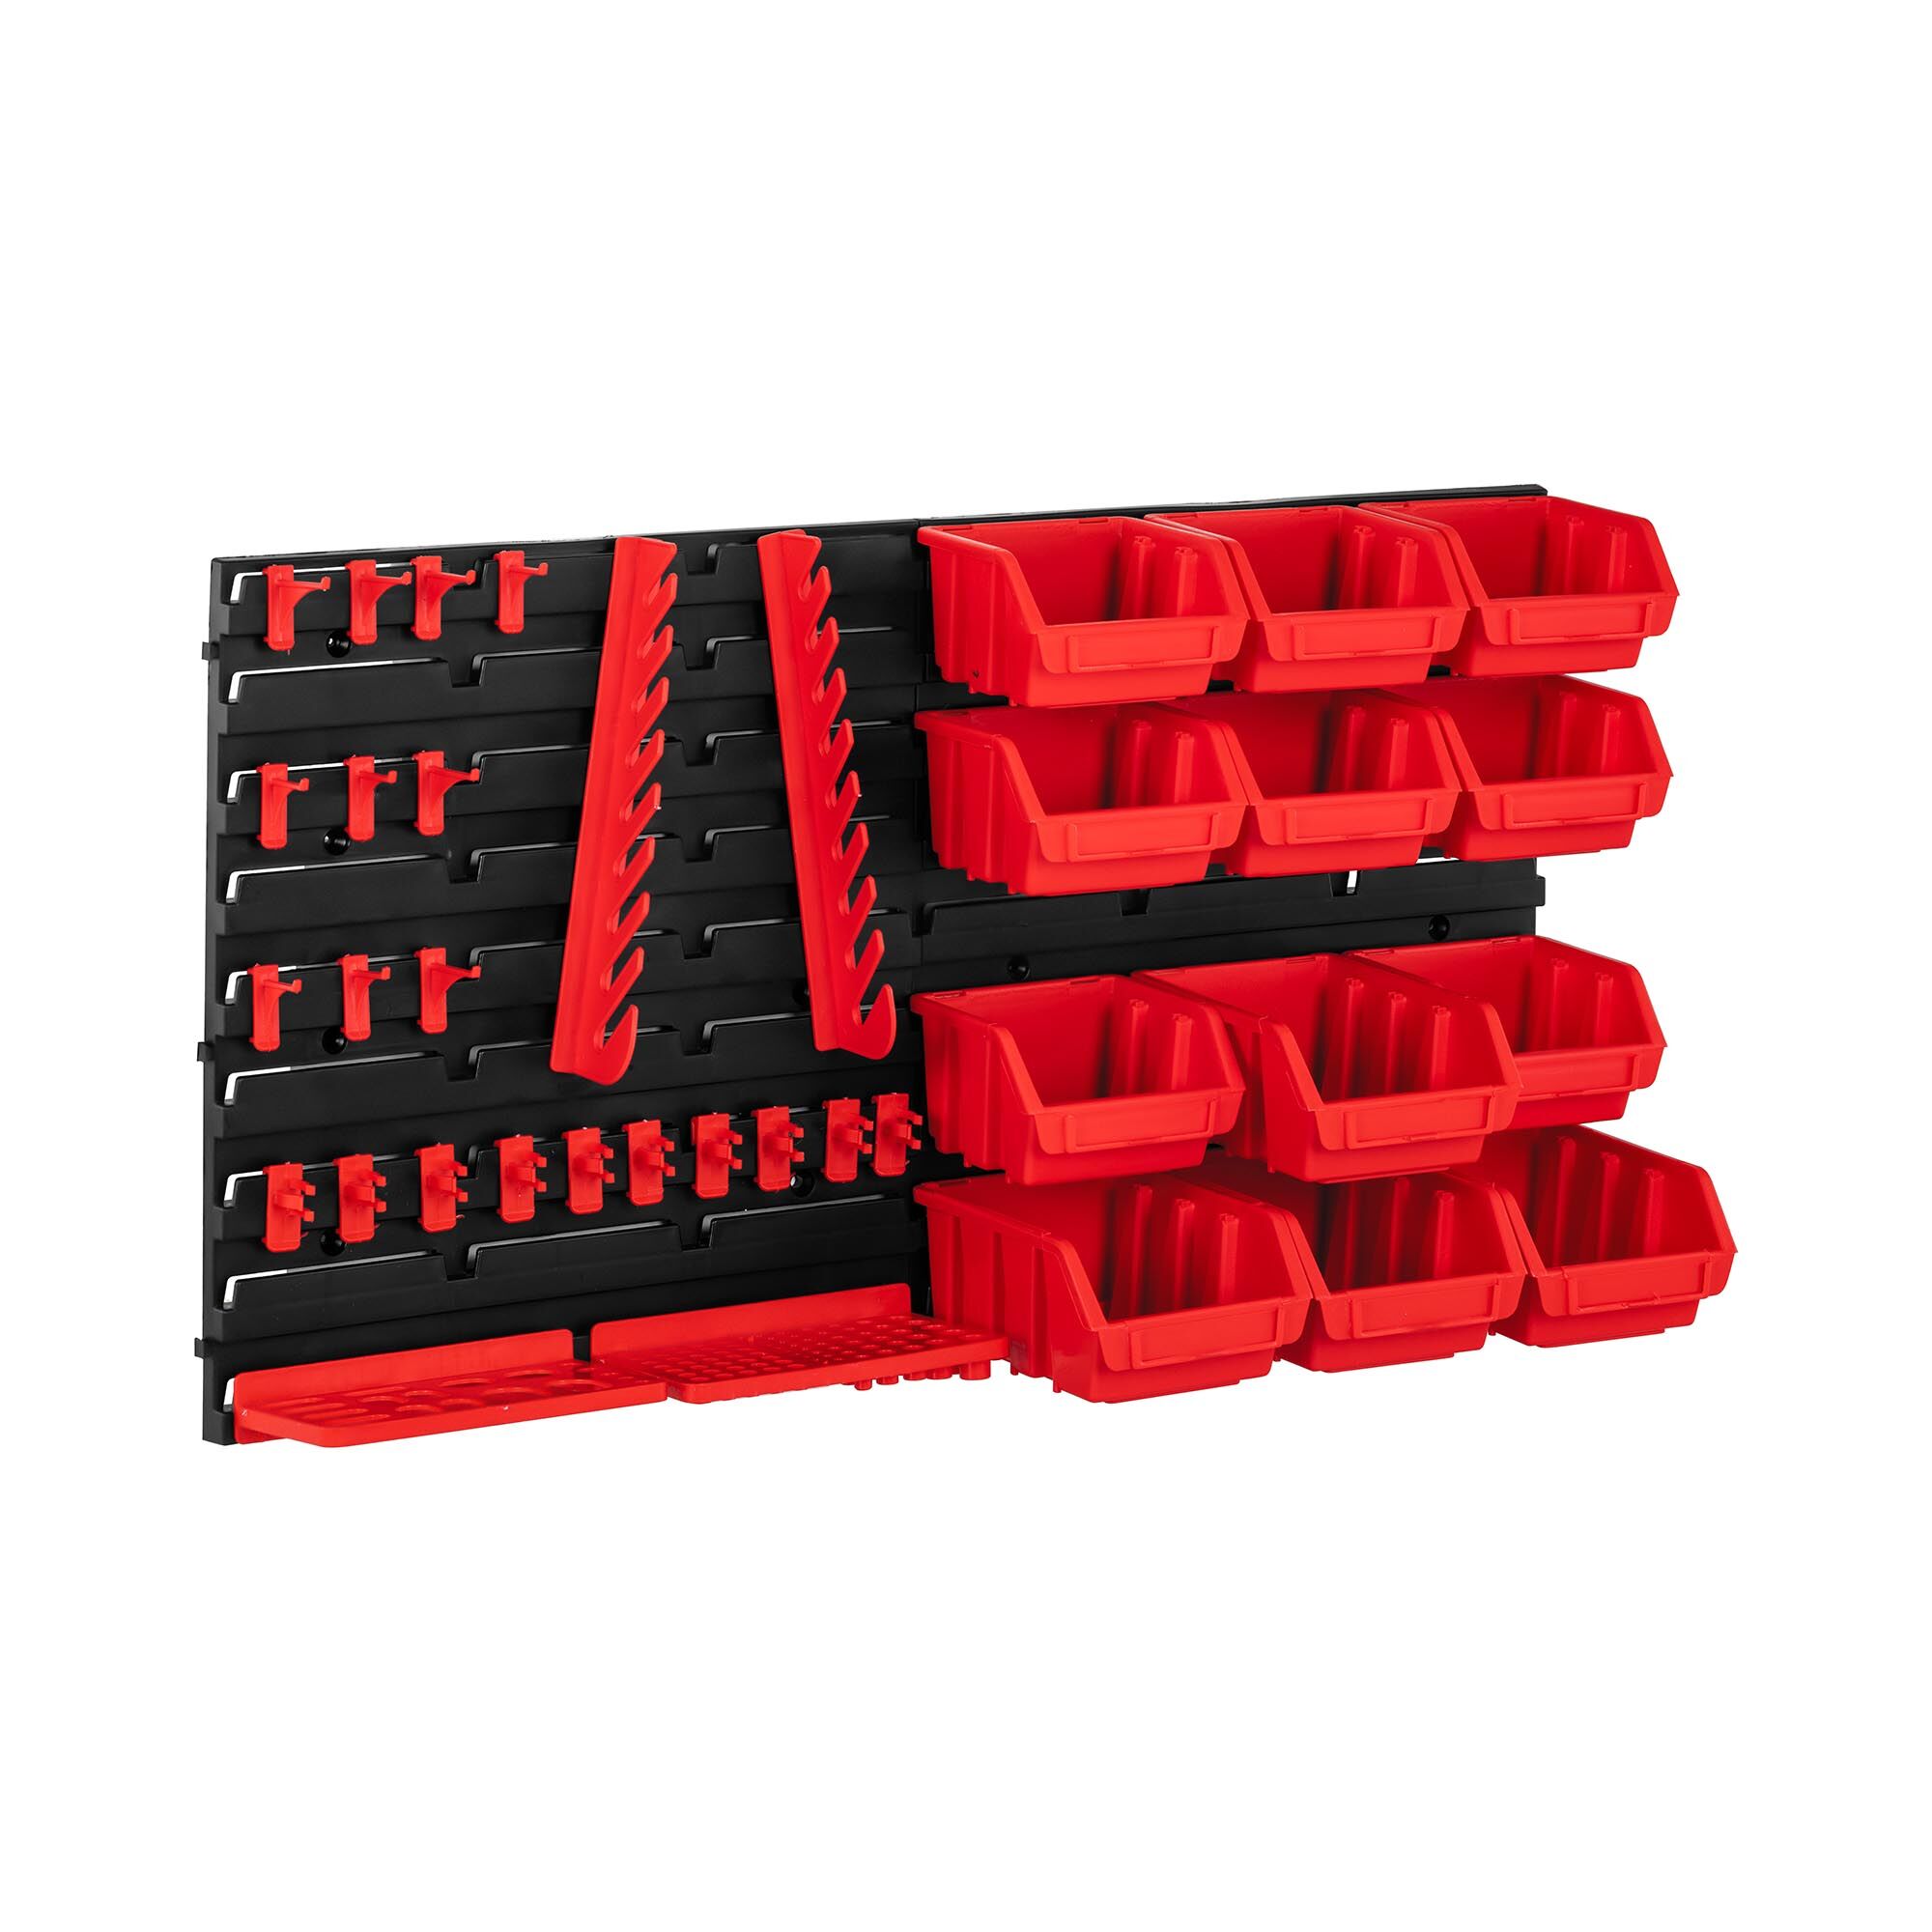 MSW Tool Storage Bins - 9 boxes - mounting set